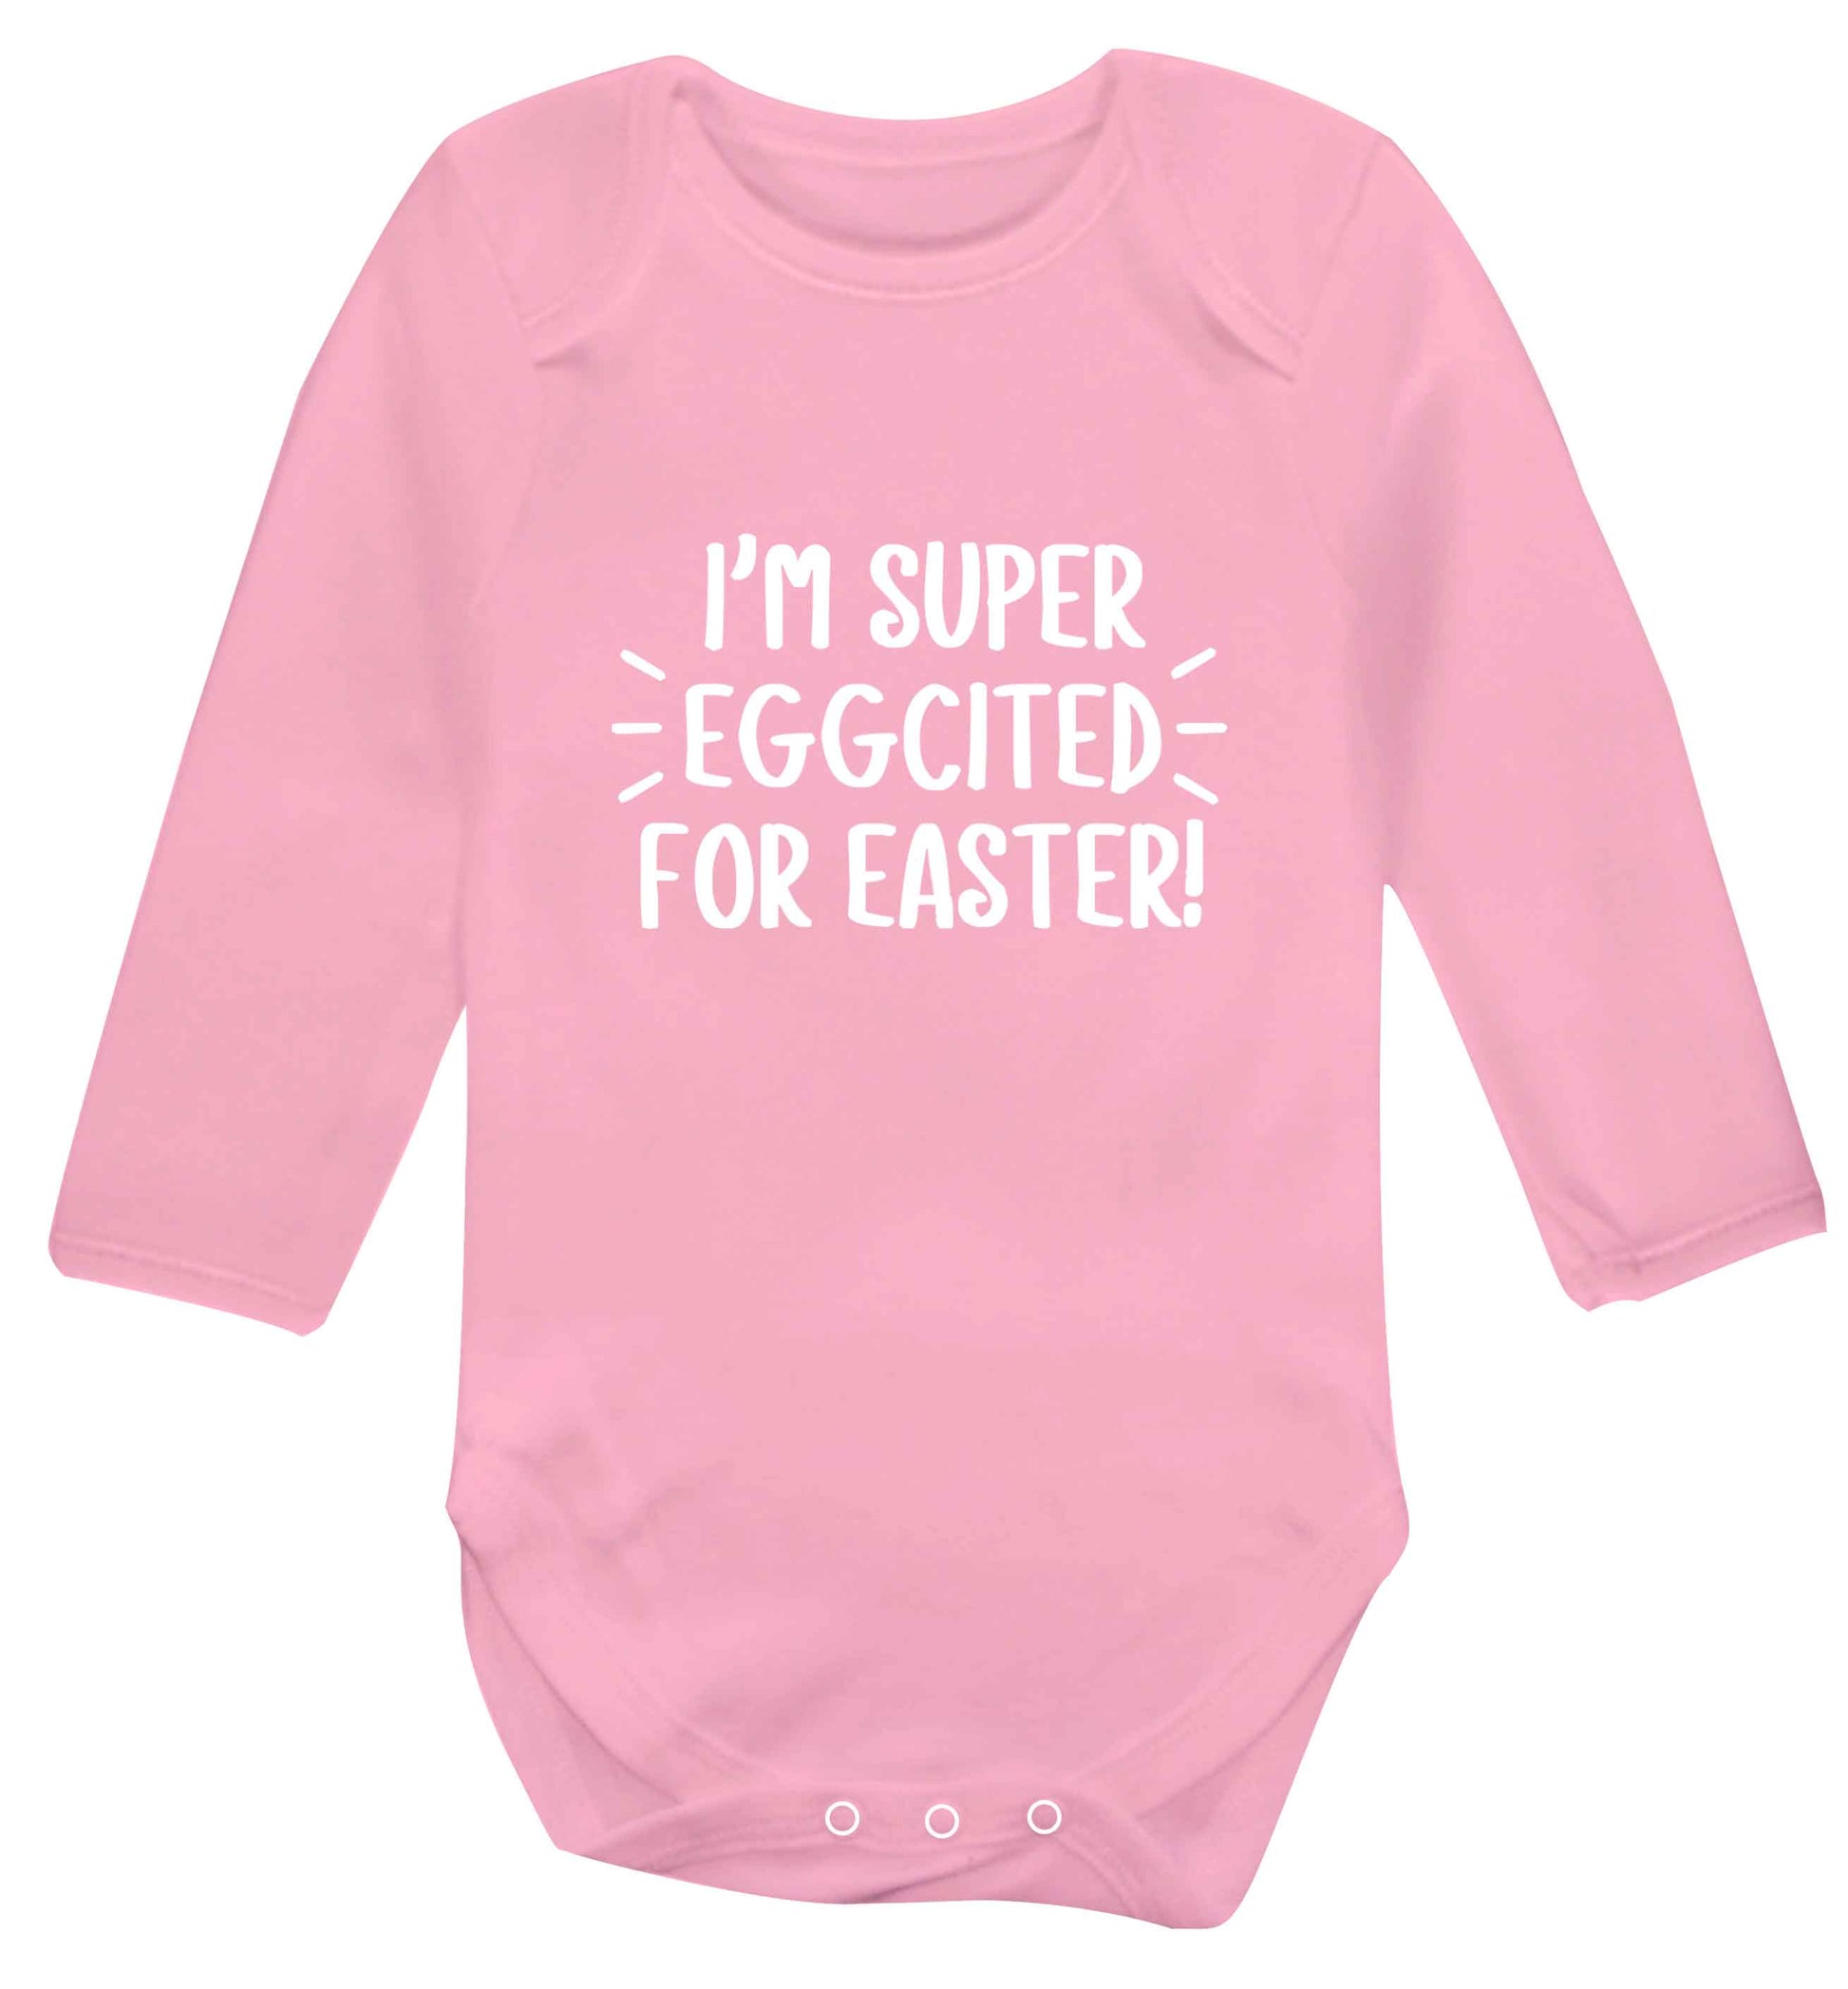 I'm super eggcited for Easter baby vest long sleeved pale pink 6-12 months